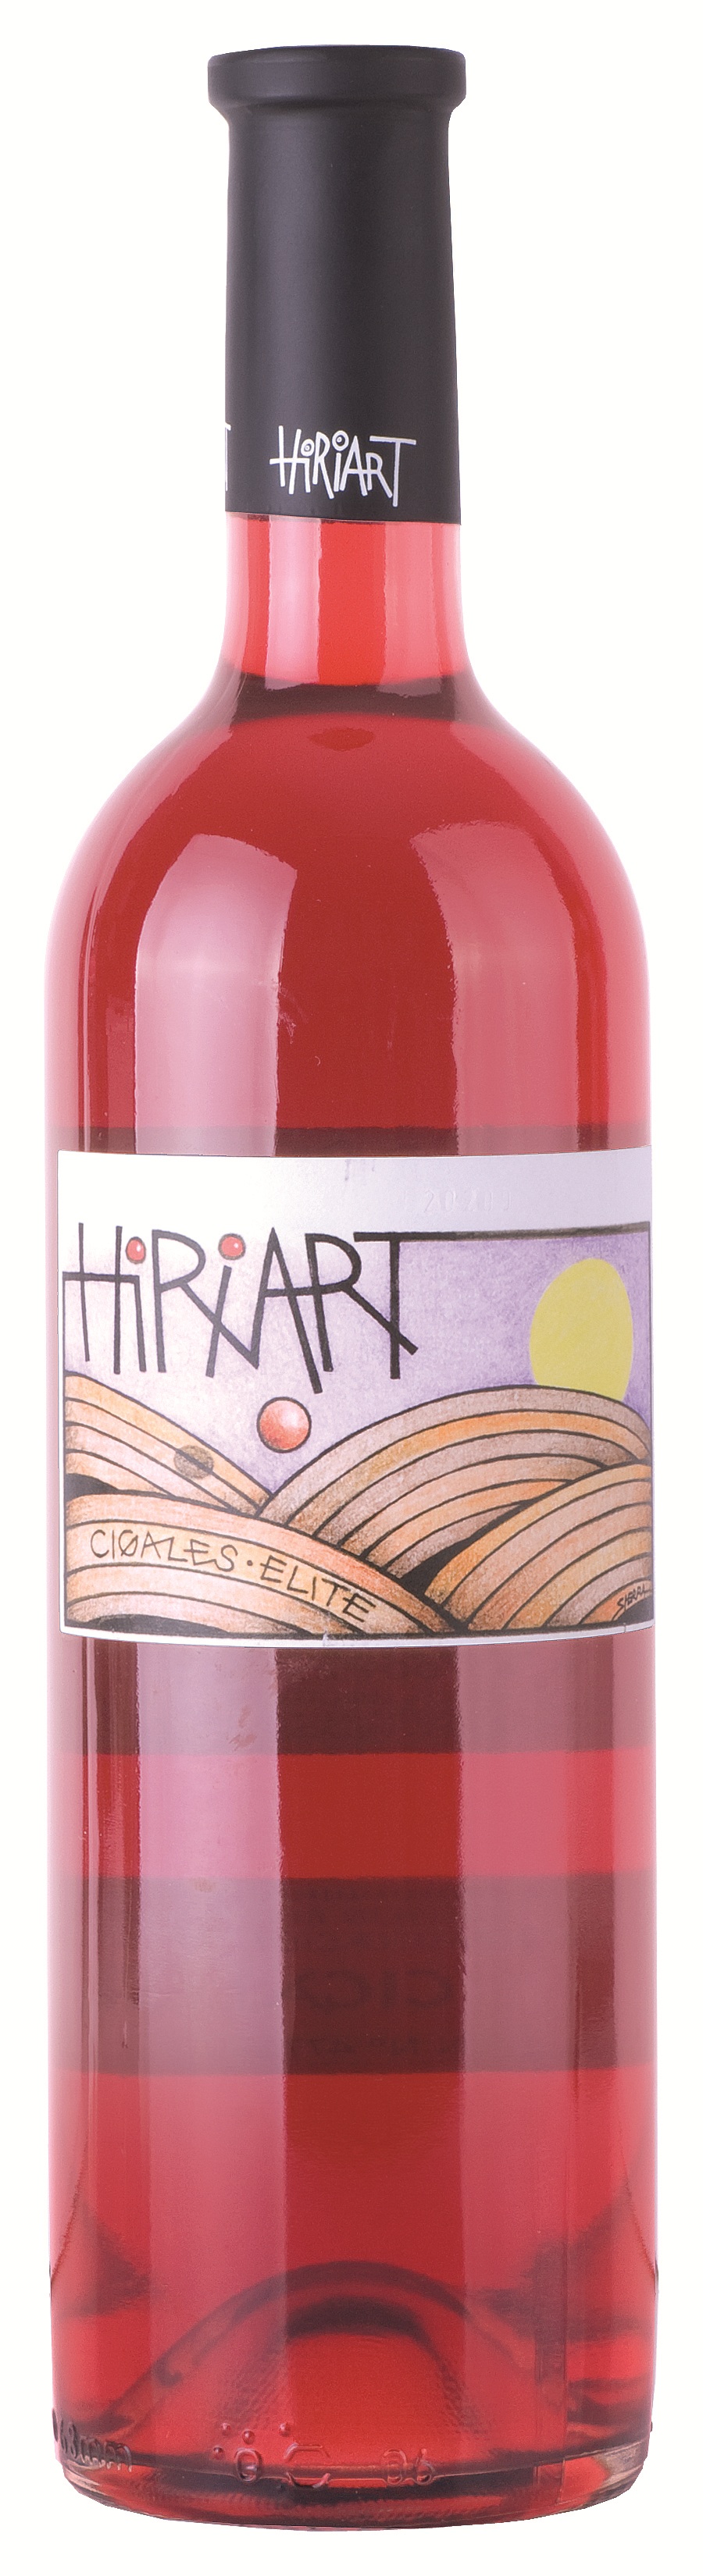 Logo Wein Hiriart Rosado Élite